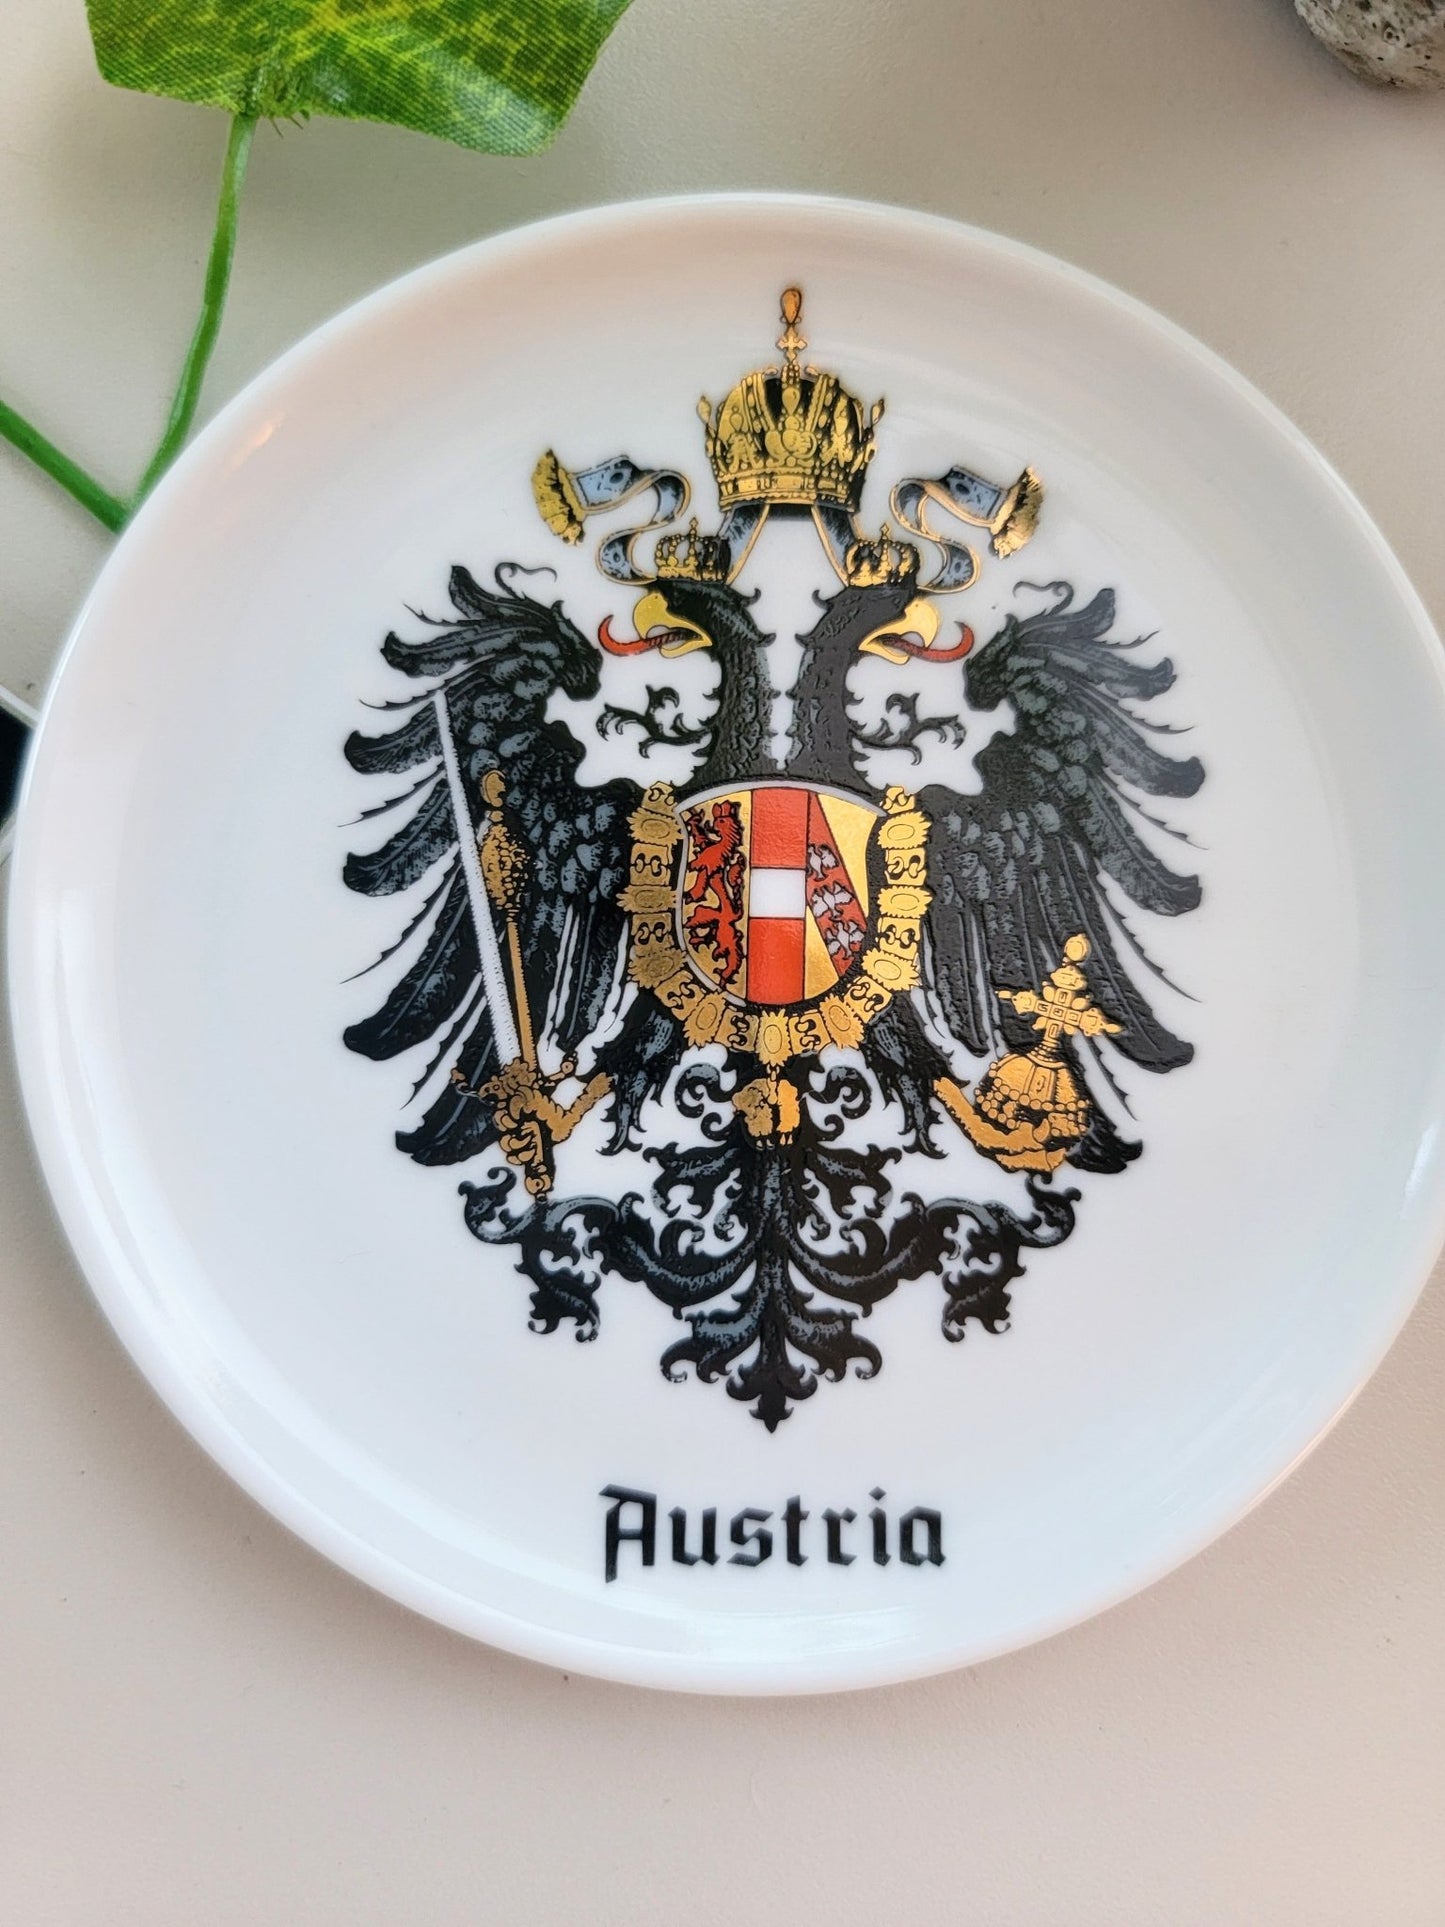 Austria Plate - Smash's Stashes